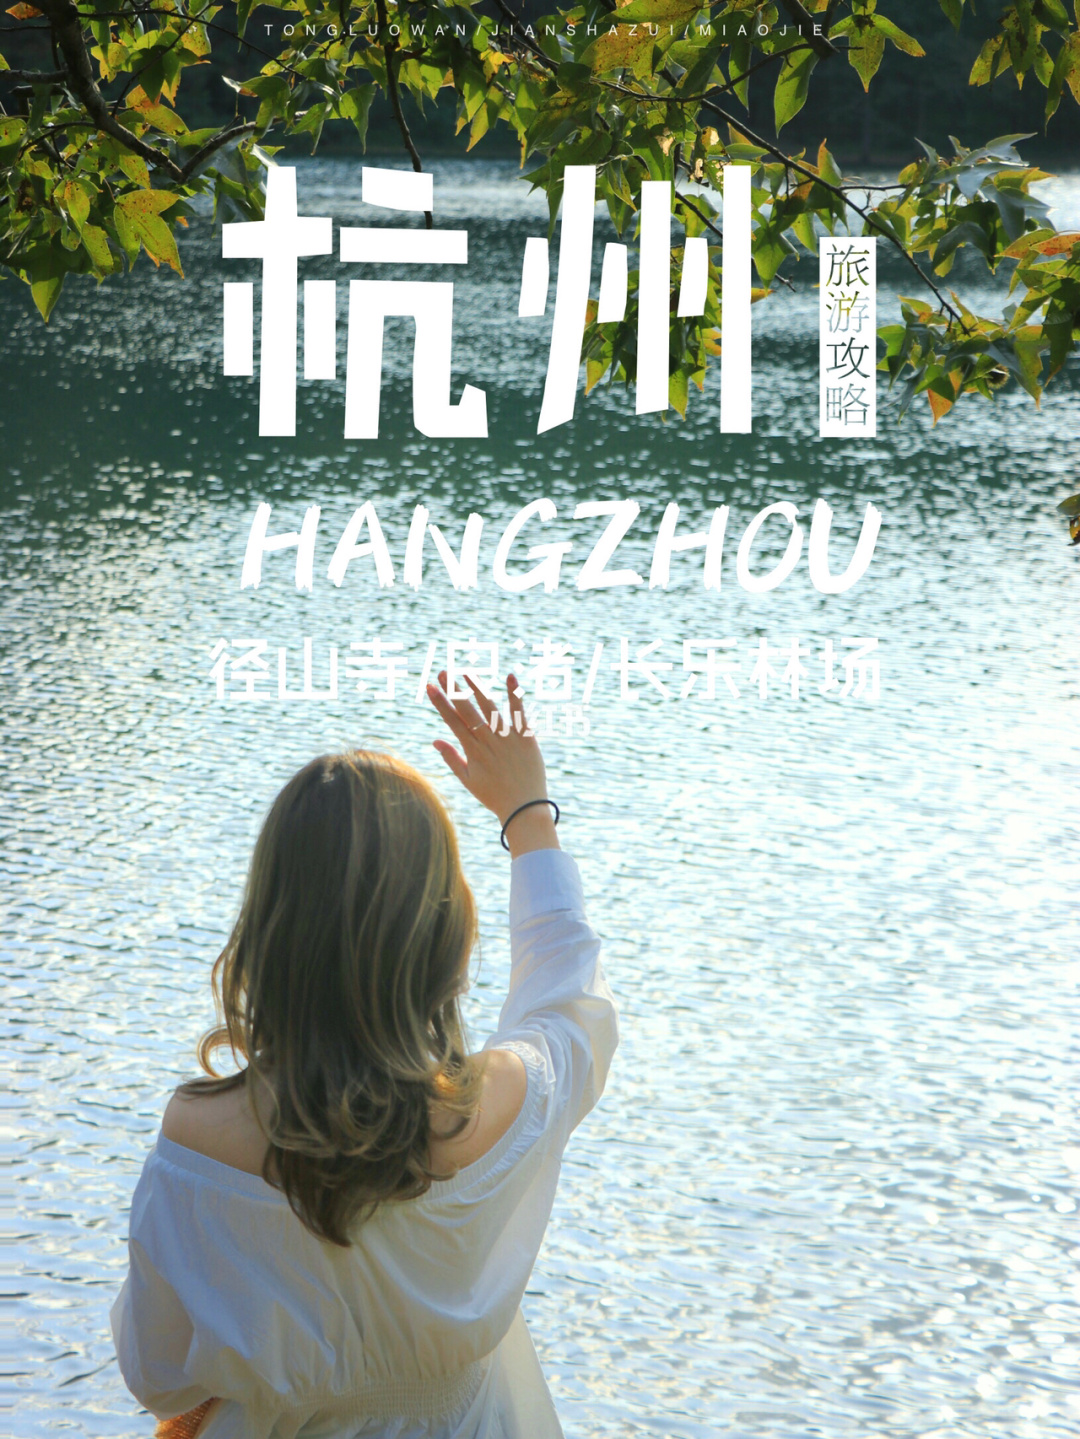 就是被誉为“人间天堂”的杭州市了，你们还有什么看法？